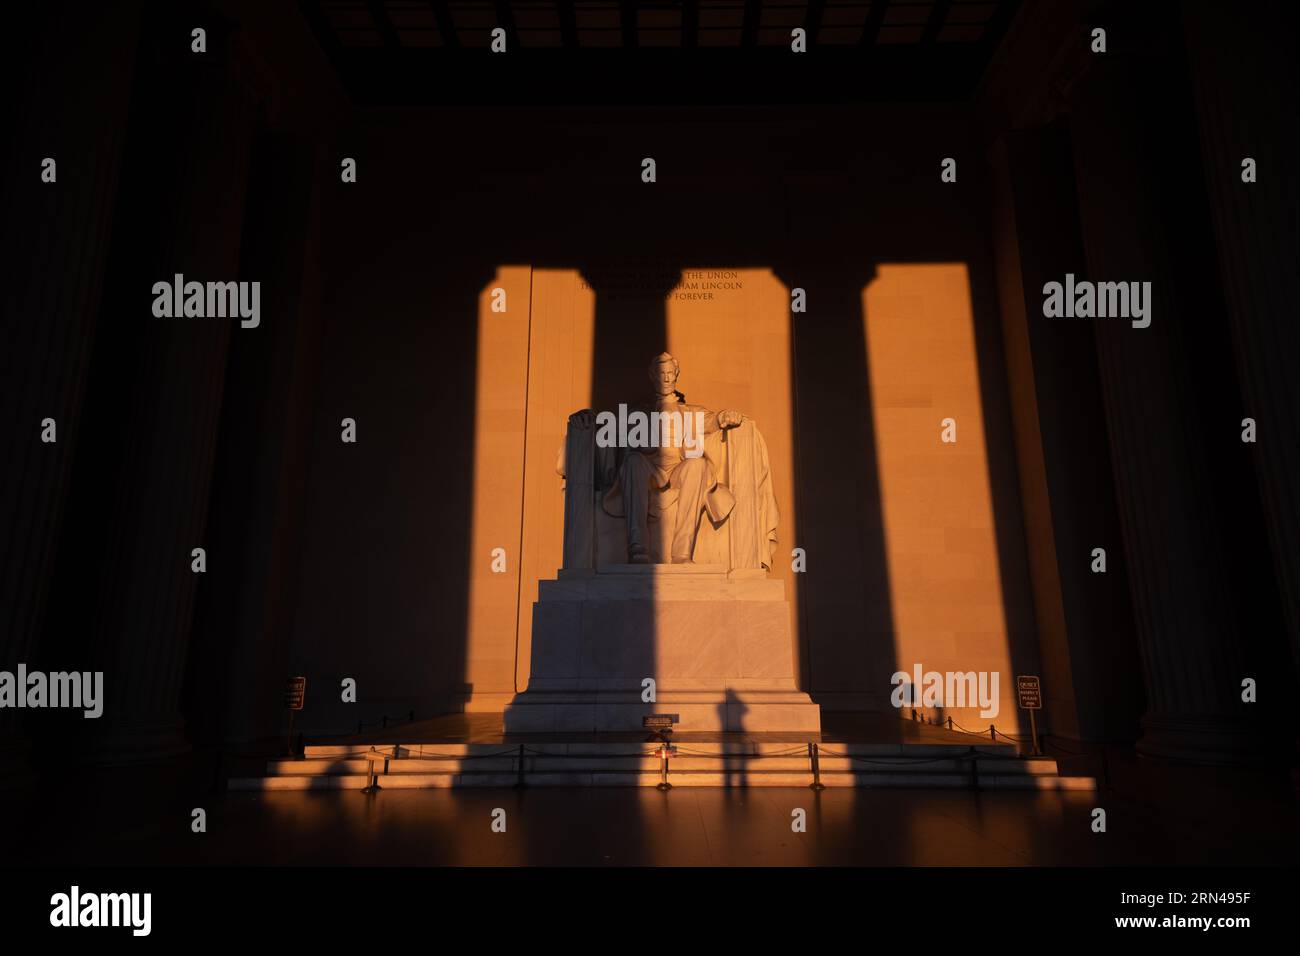 WASHINGTON DC, États-Unis — la statue du Lincoln Memorial, illuminée par la lumière dorée du lever du soleil pendant le solstice de printemps, projette une lueur chaude sur le monument historique. Cet événement solaire spécifique accentue les caractéristiques de l'hommage emblématique au 16e président américain, soulignant le rôle d'Abraham Lincoln dans l'histoire de la nation. Banque D'Images